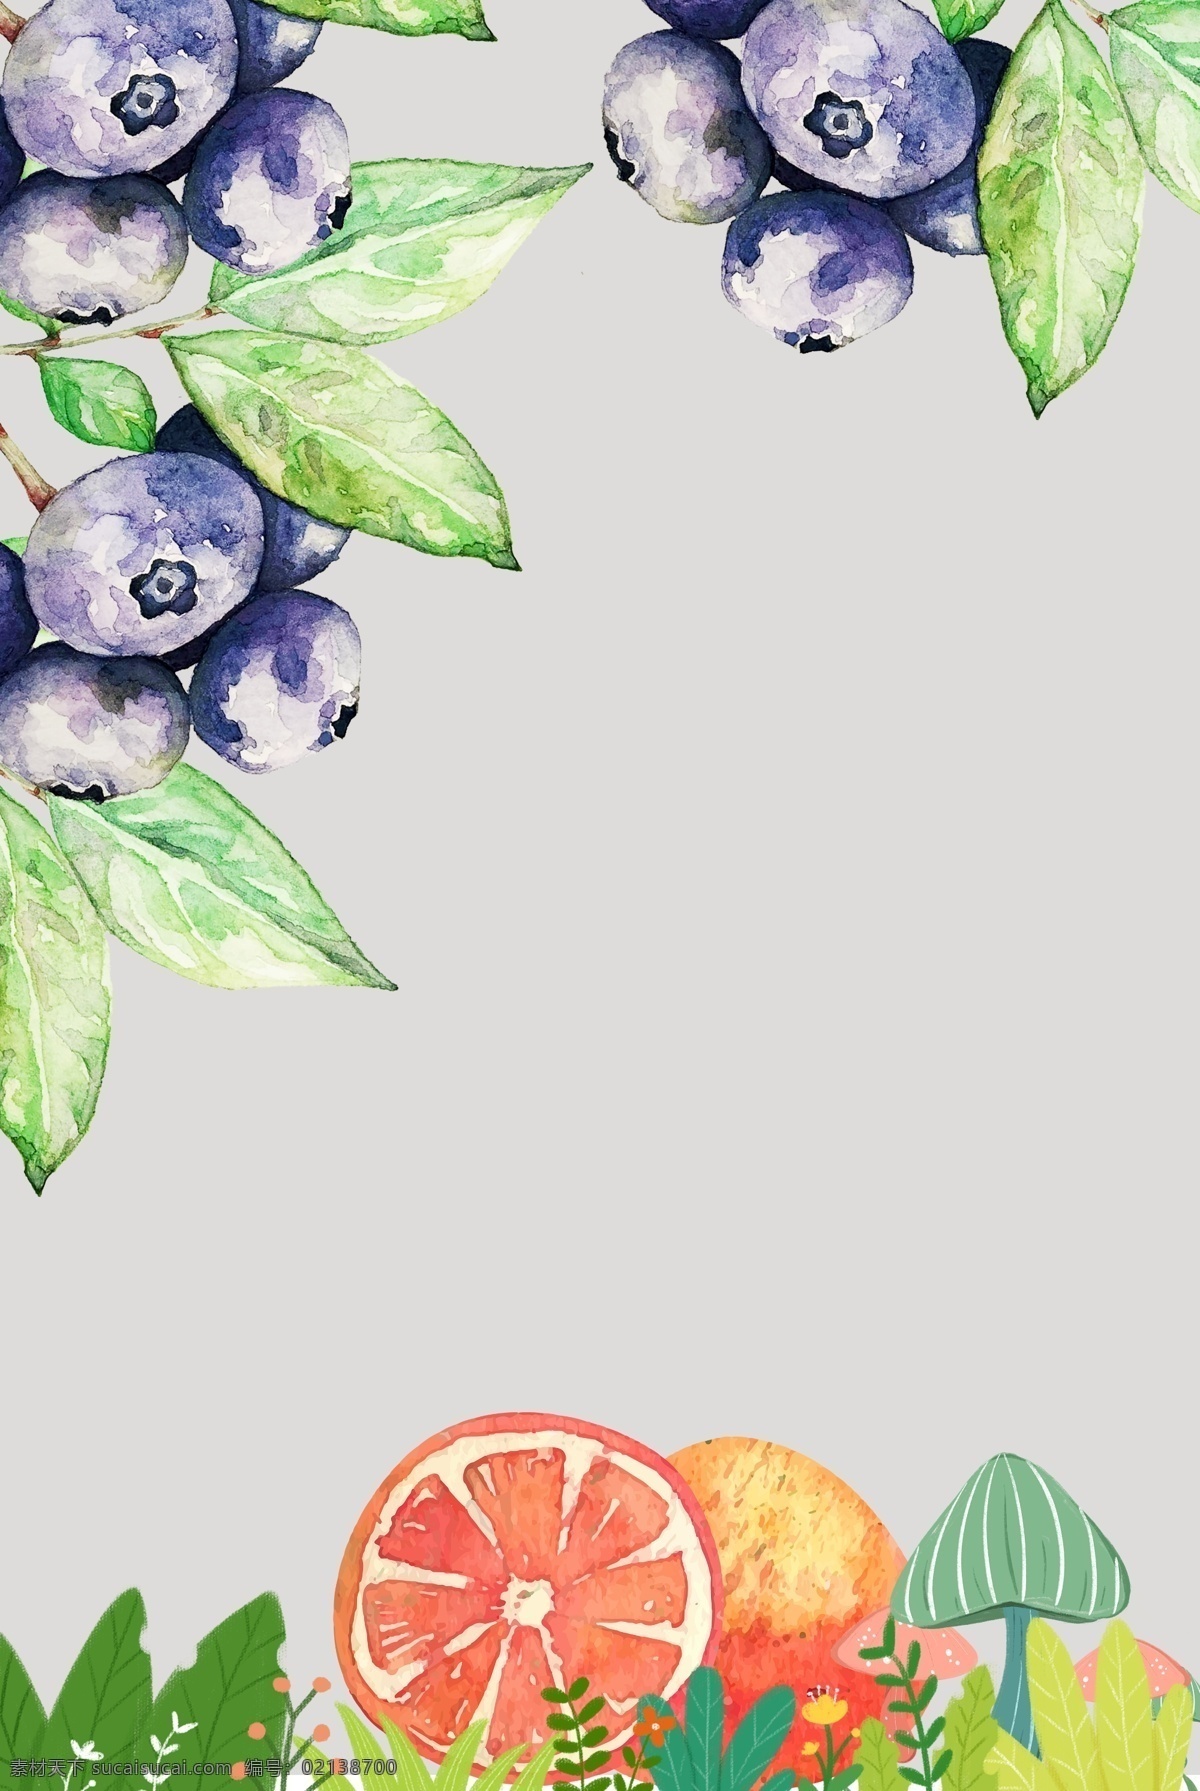 蓝莓水果背景 简约 清新 纹理 淡雅 水果 蓝莓 卡通 花卉